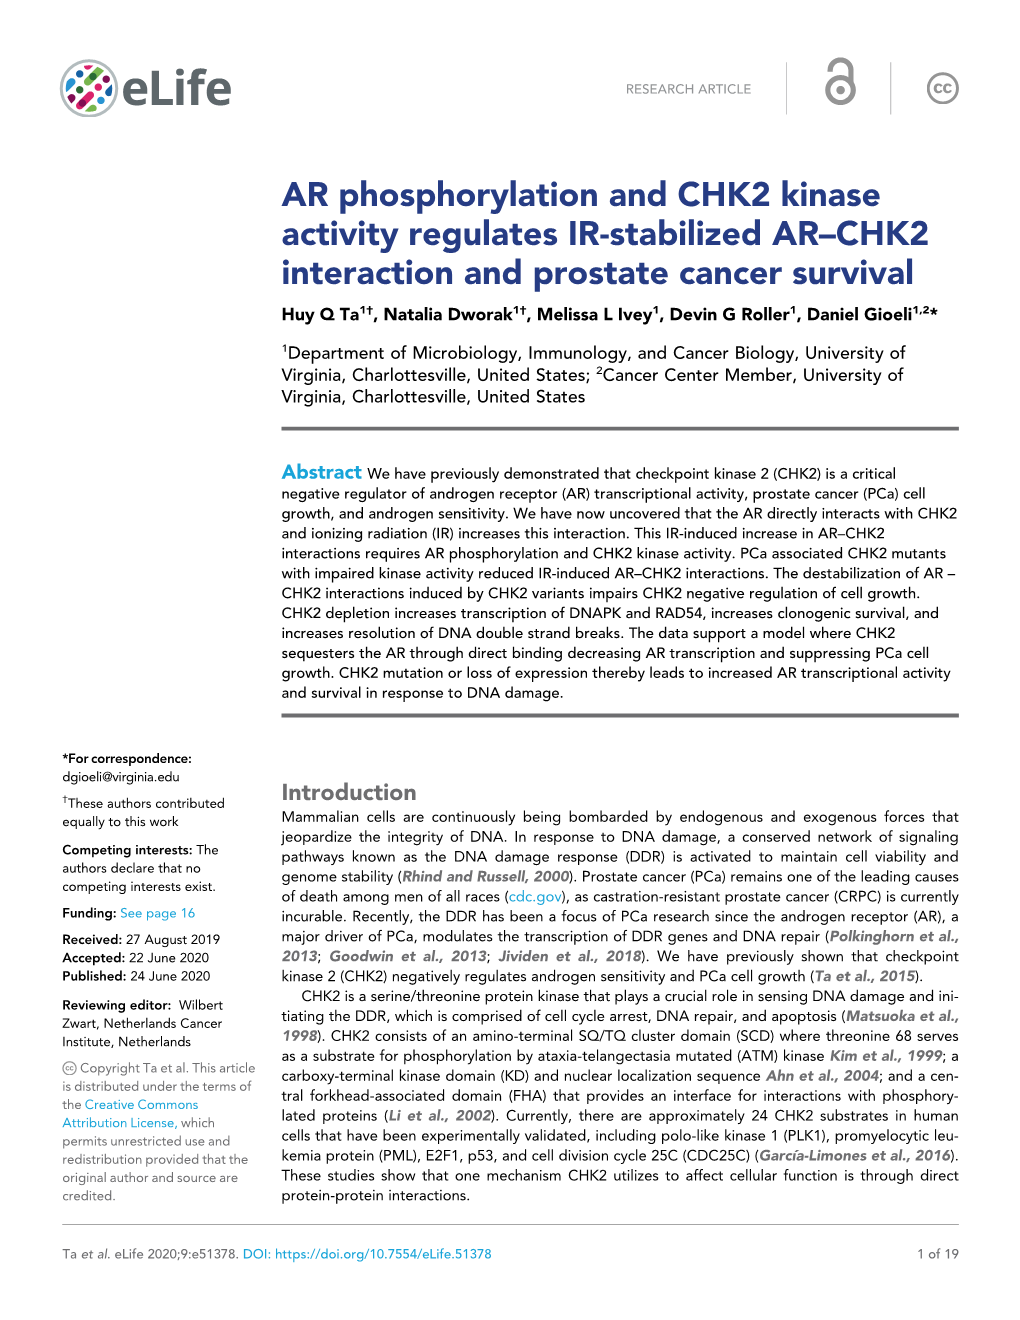 AR Phosphorylation and CHK2 Kinase Activity Regulates IR-Stabilized AR